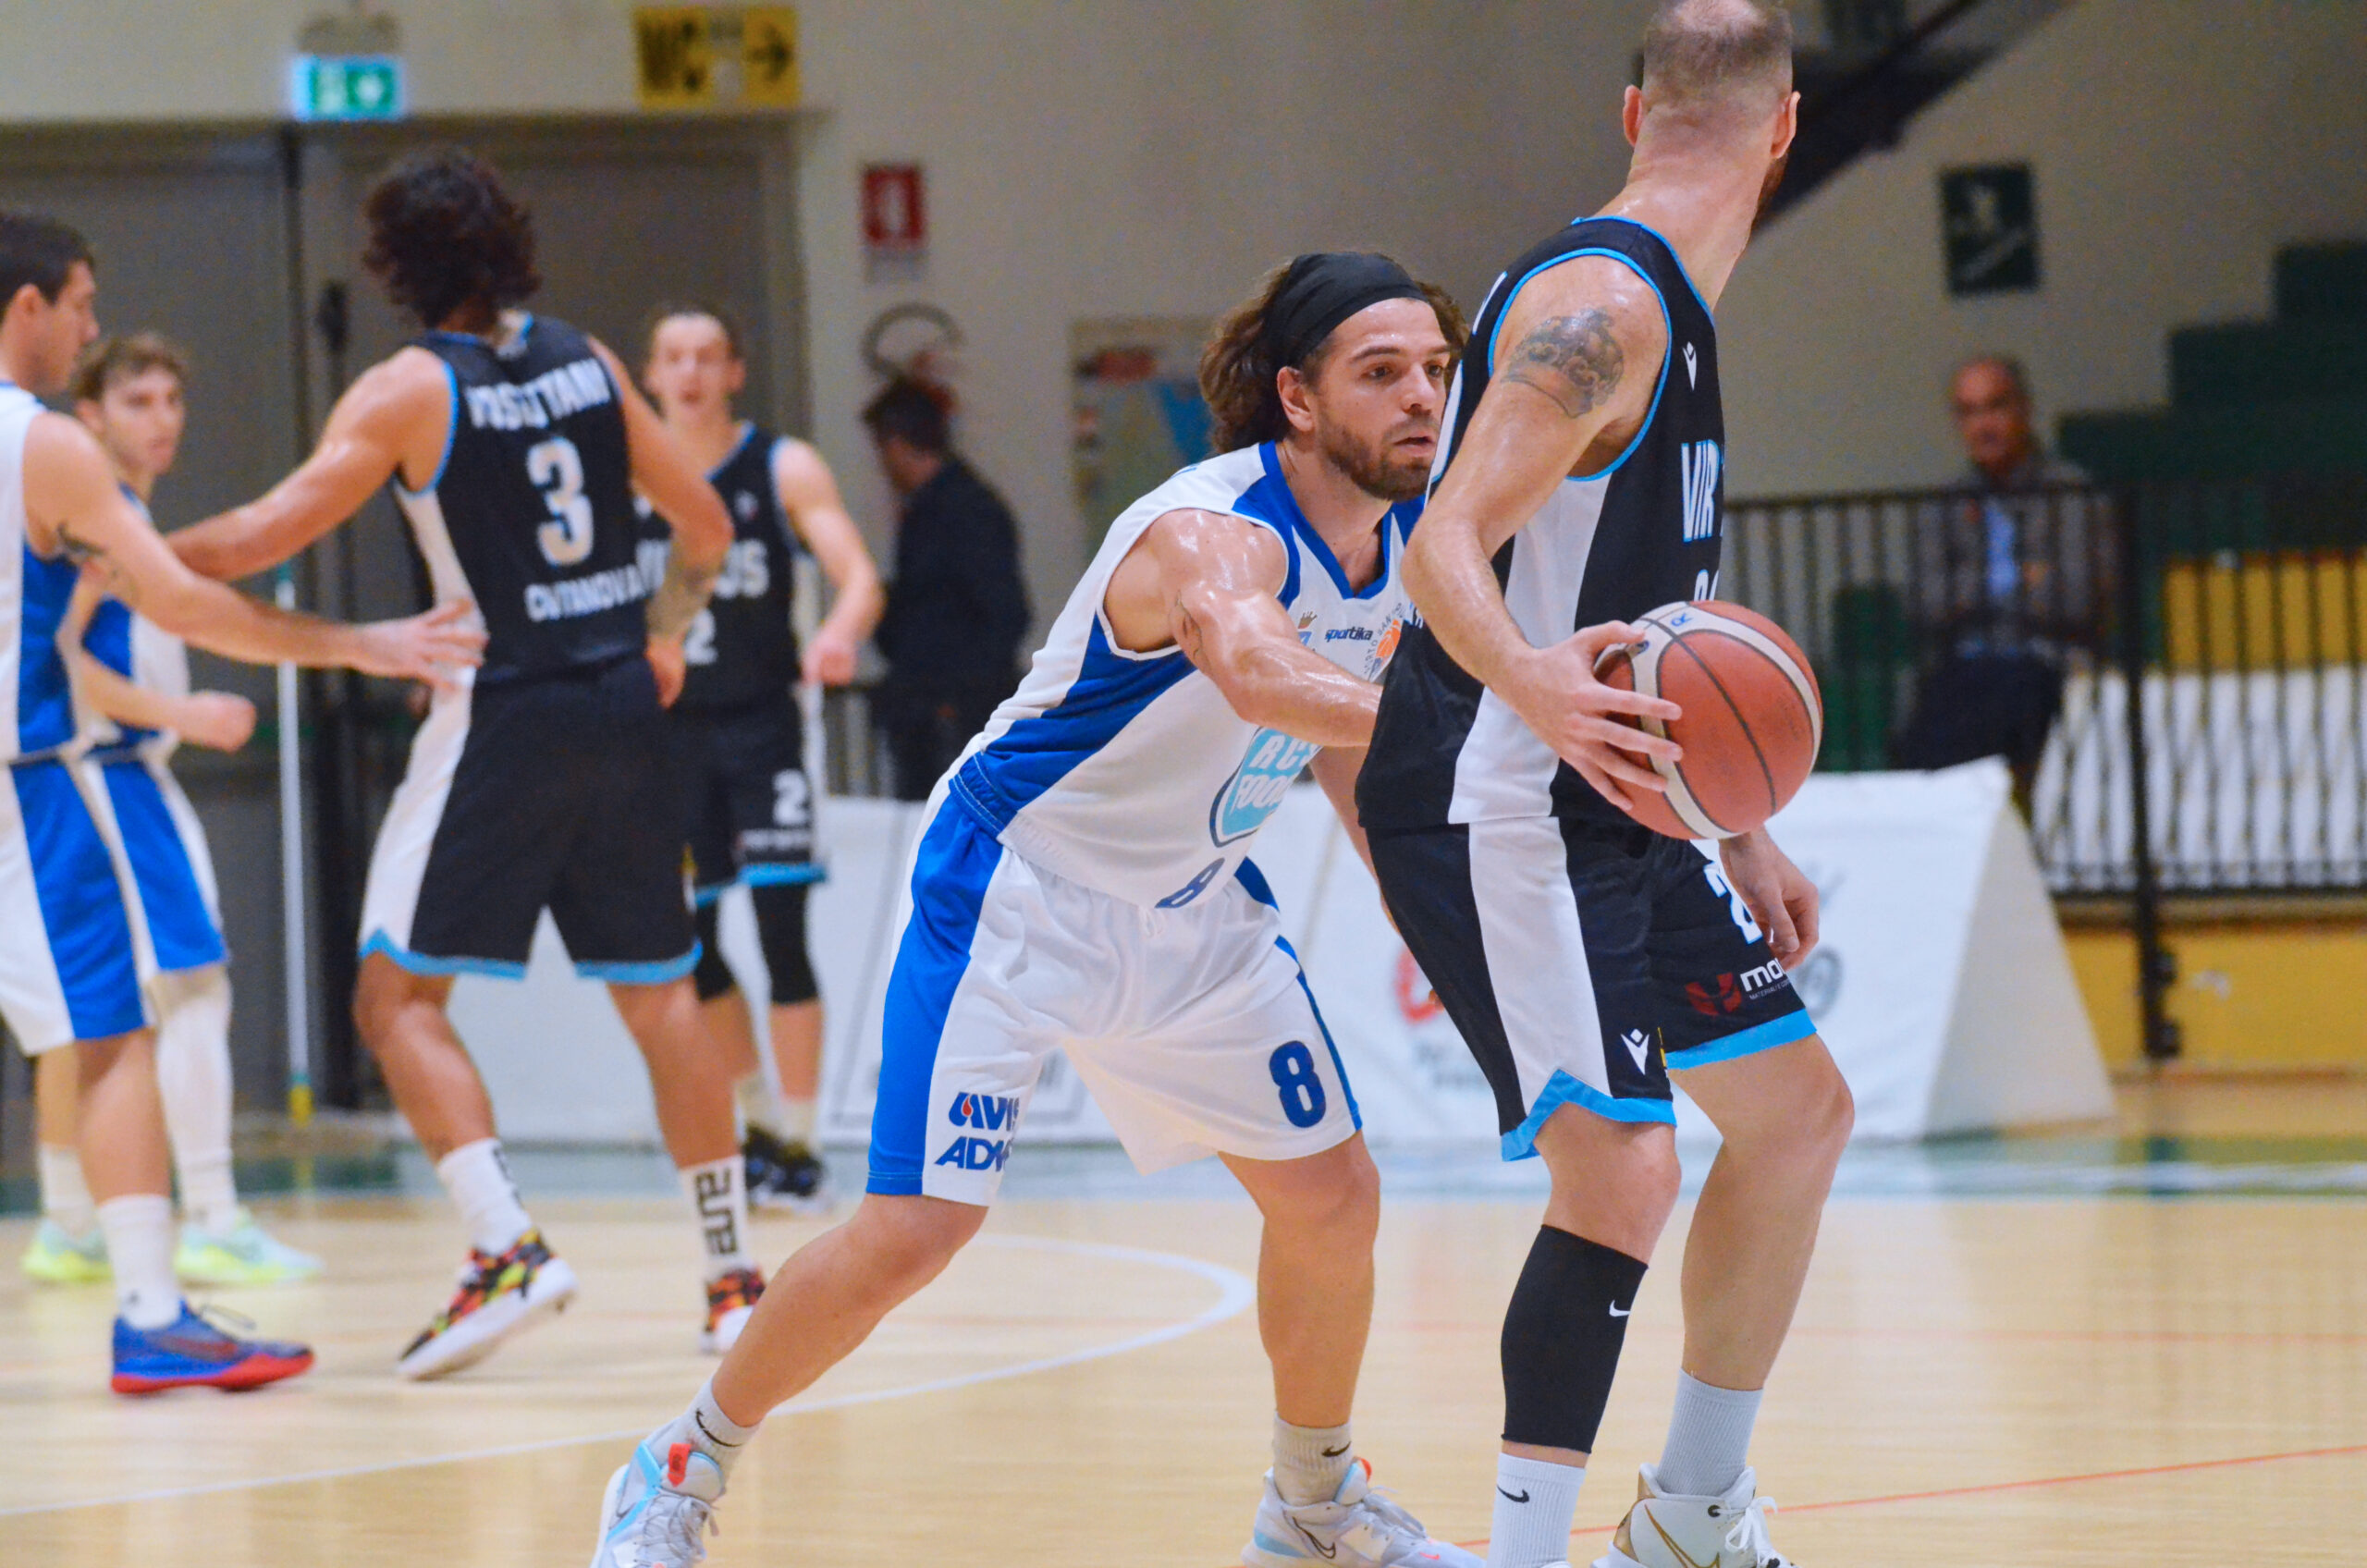 PSE Basket - Virtus Civitanova 48-79: Biancoazzurri travolti